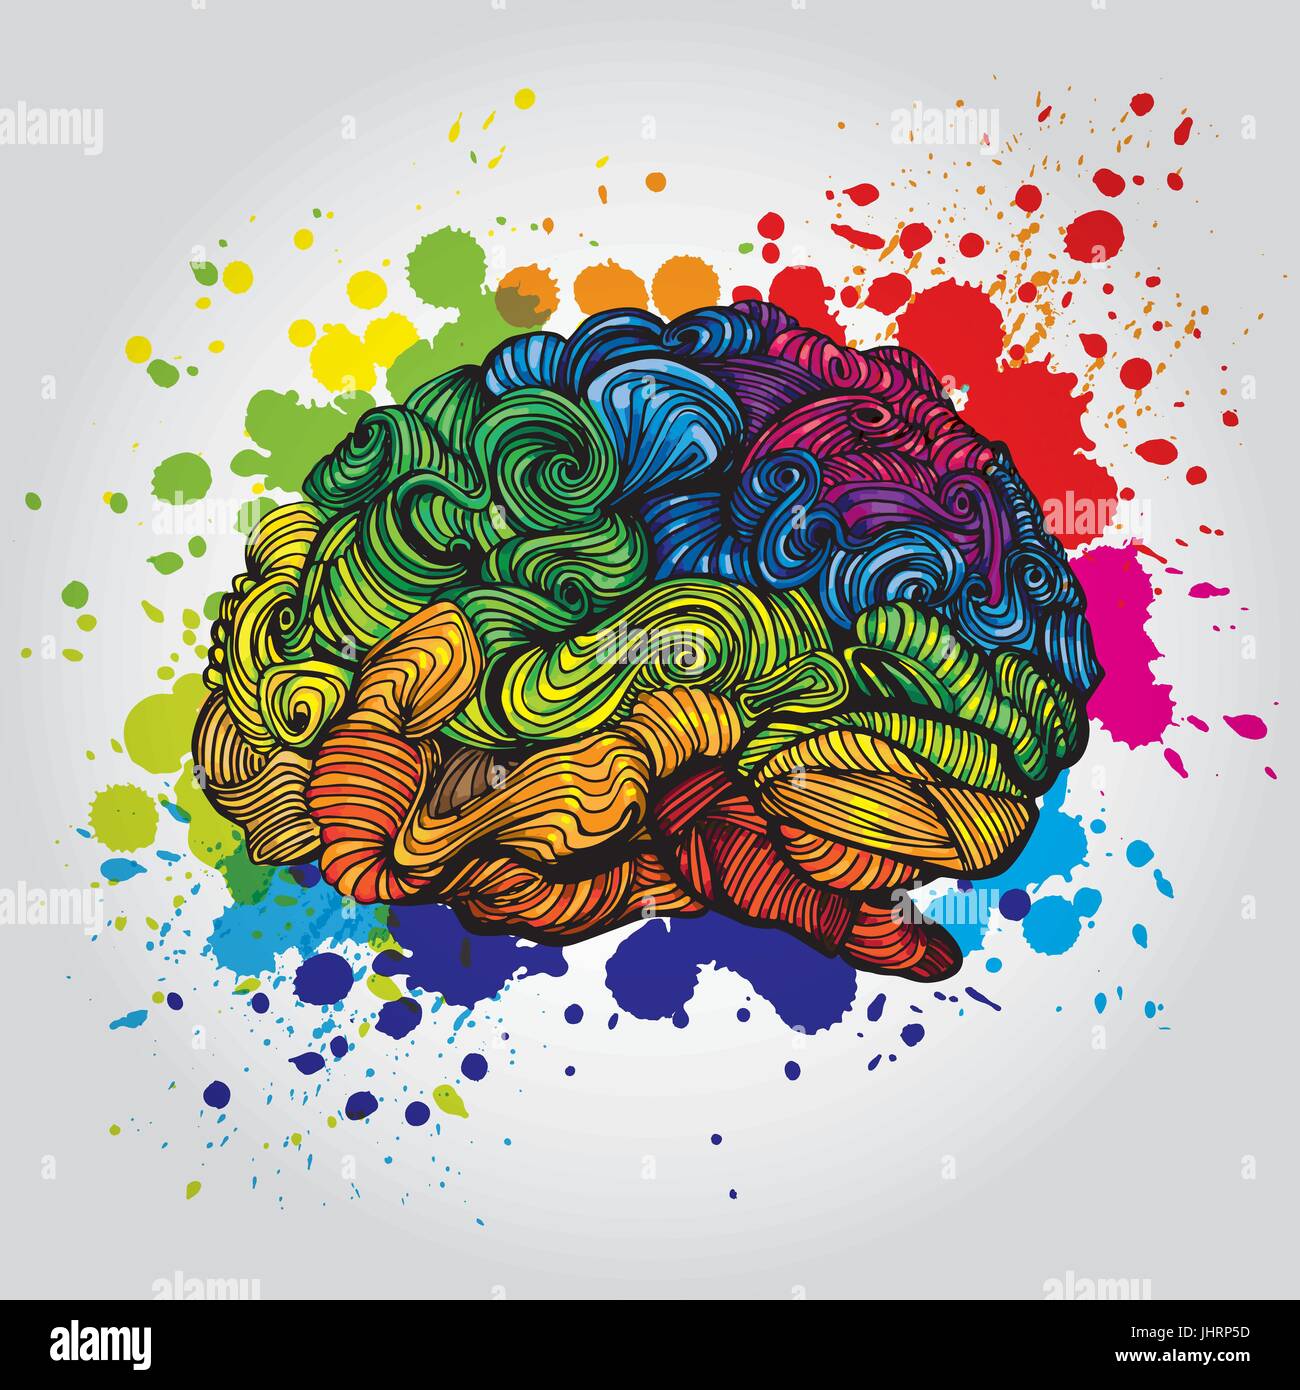 Cerveau idée lumineuse illustration. Vecteur Doodle concept a propos de cerveau humain et d'idées. Illustration créative Illustration de Vecteur